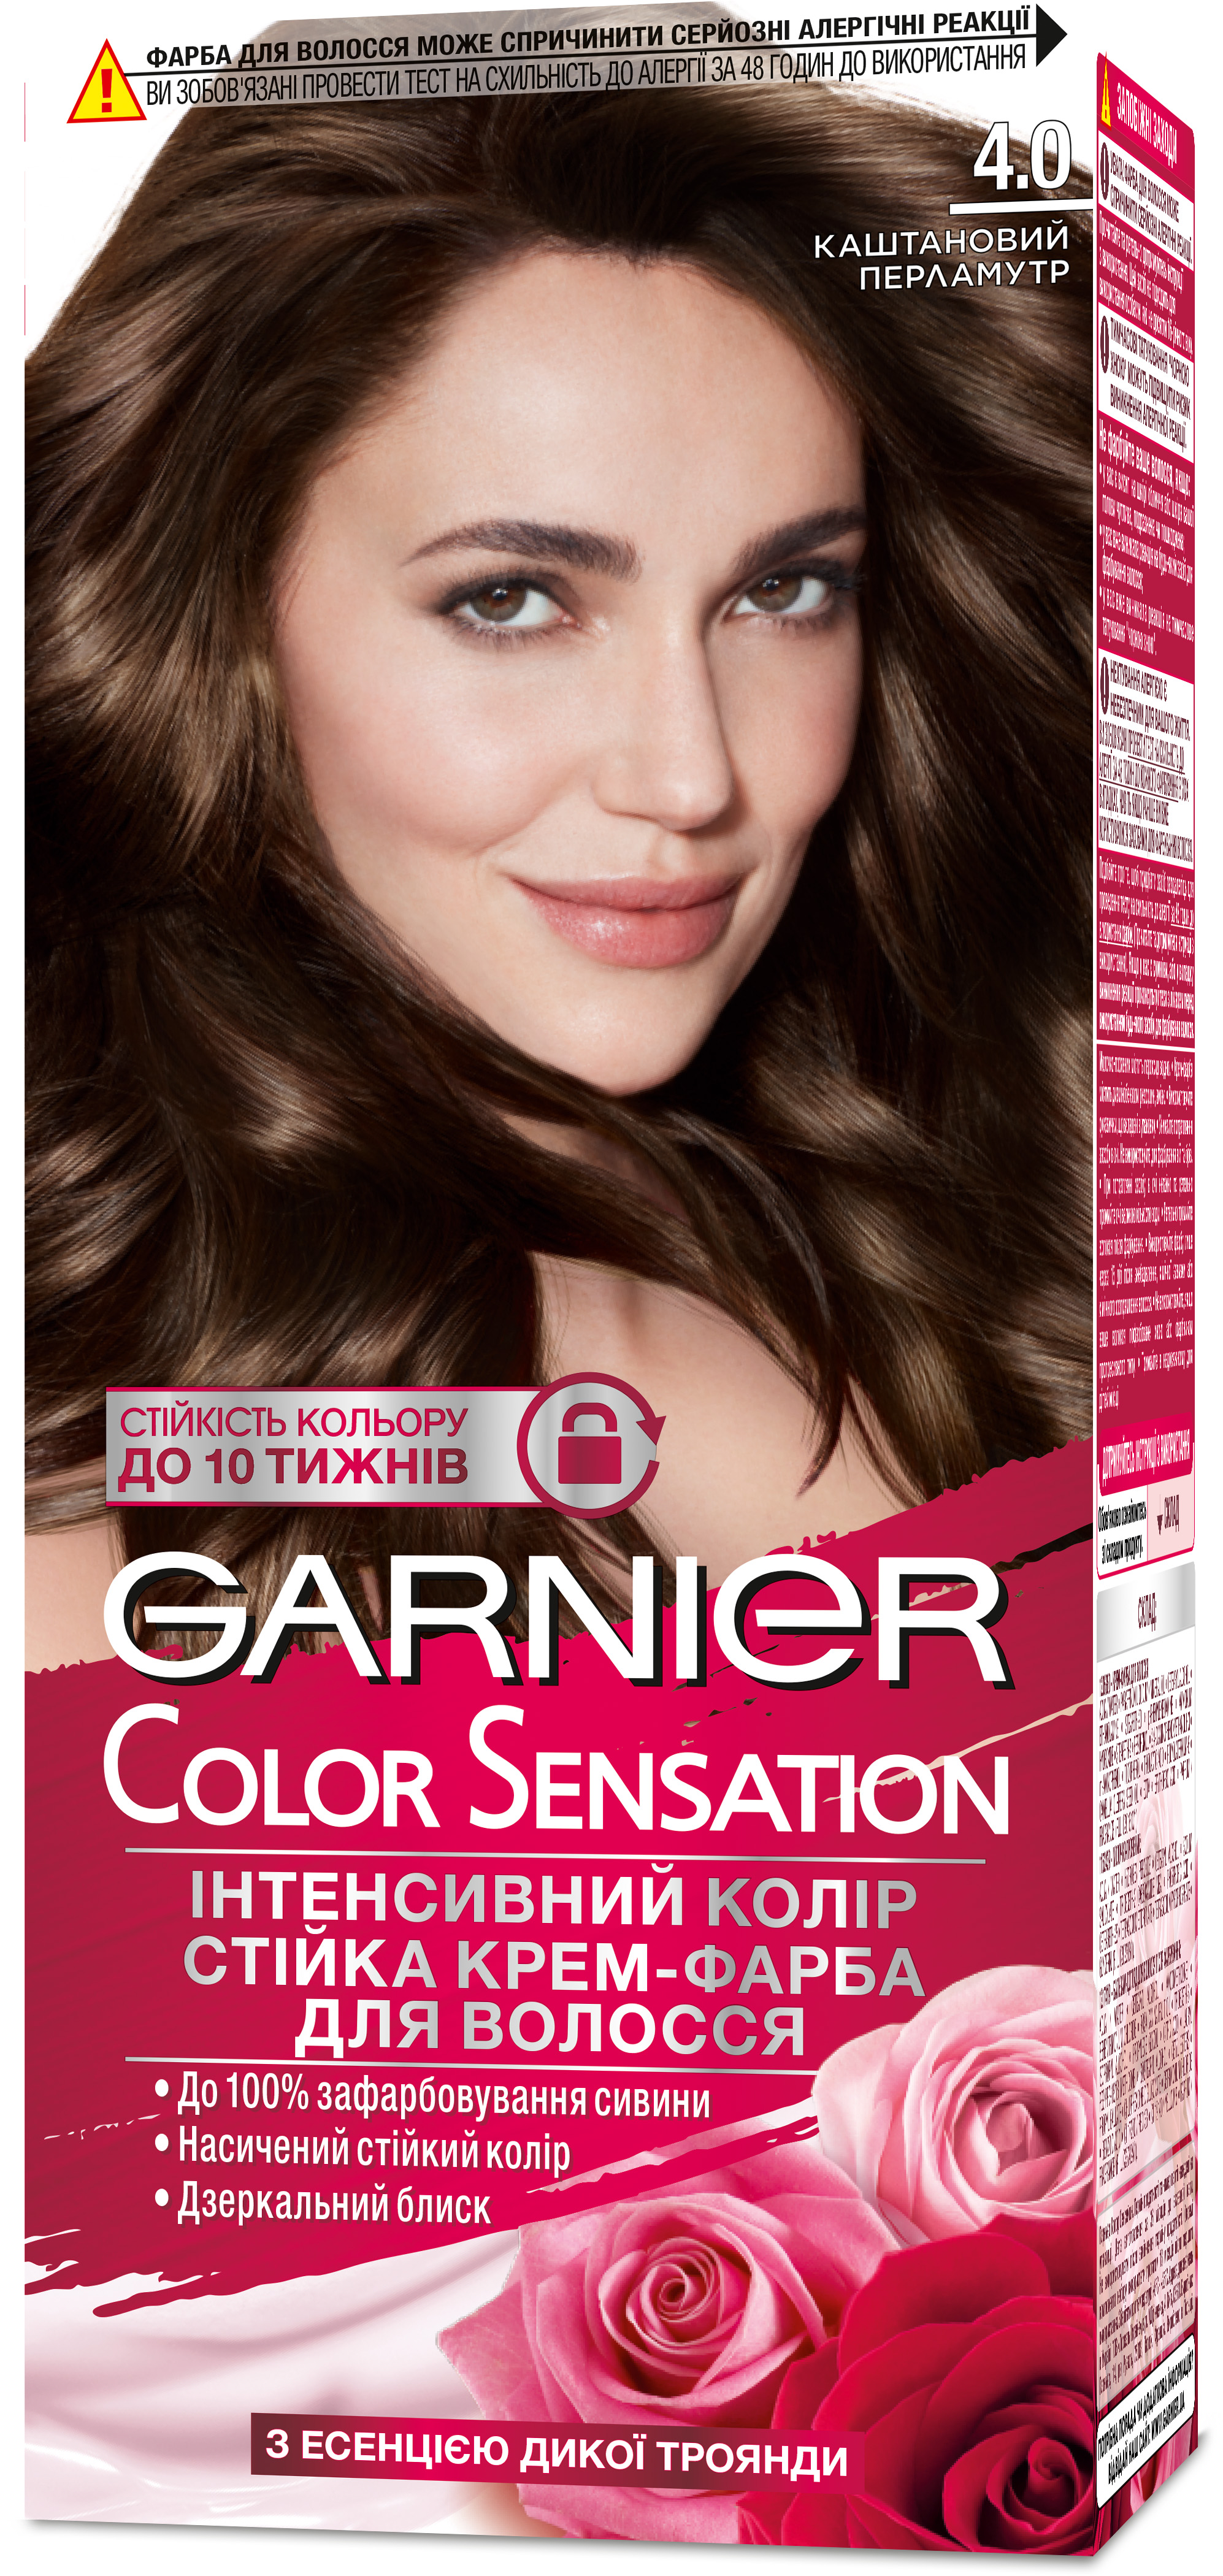 Garnier Color Sensation 4.0 каштановый перламутр